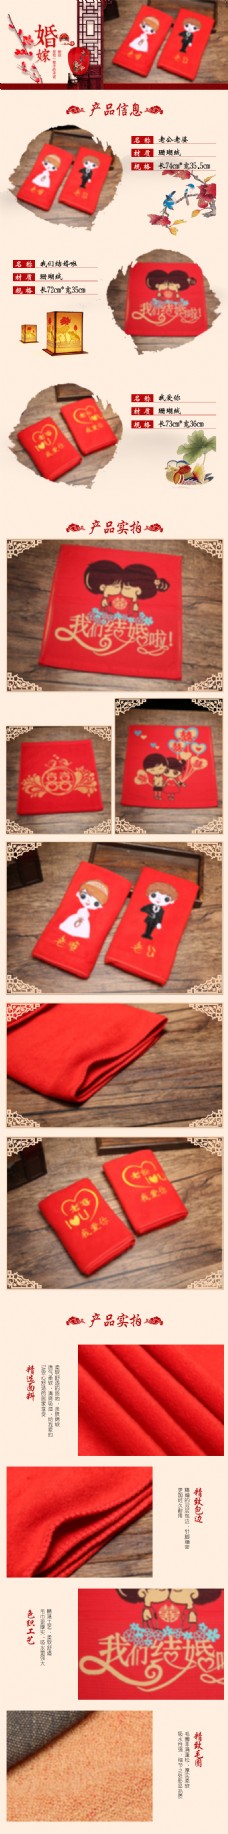 中国风情中国风婚庆用品毛巾详情页模版